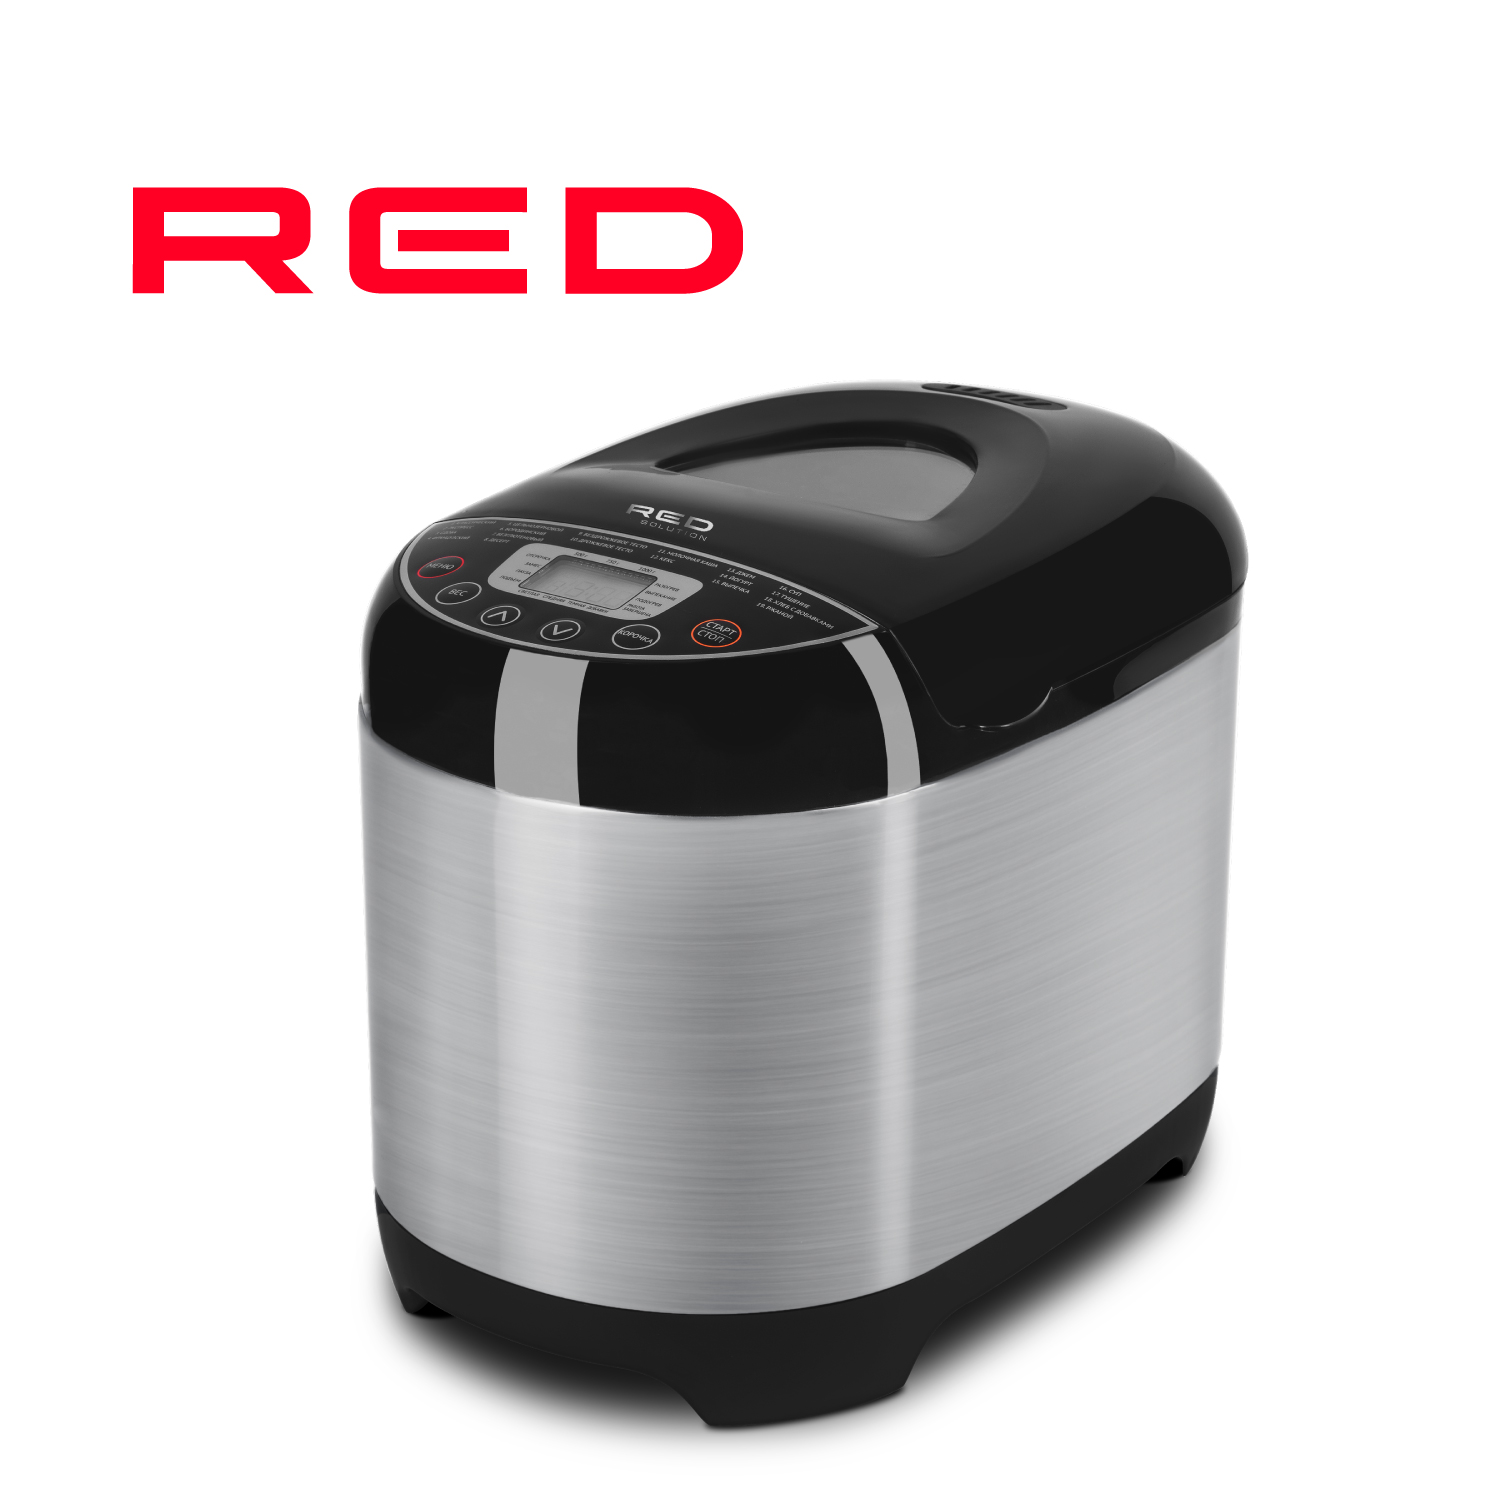 Хлебопечка RED SOLUTION RBM-M1911 серебристый, серый, черный хлебопечка maunfeld mbm 900dss серебристый